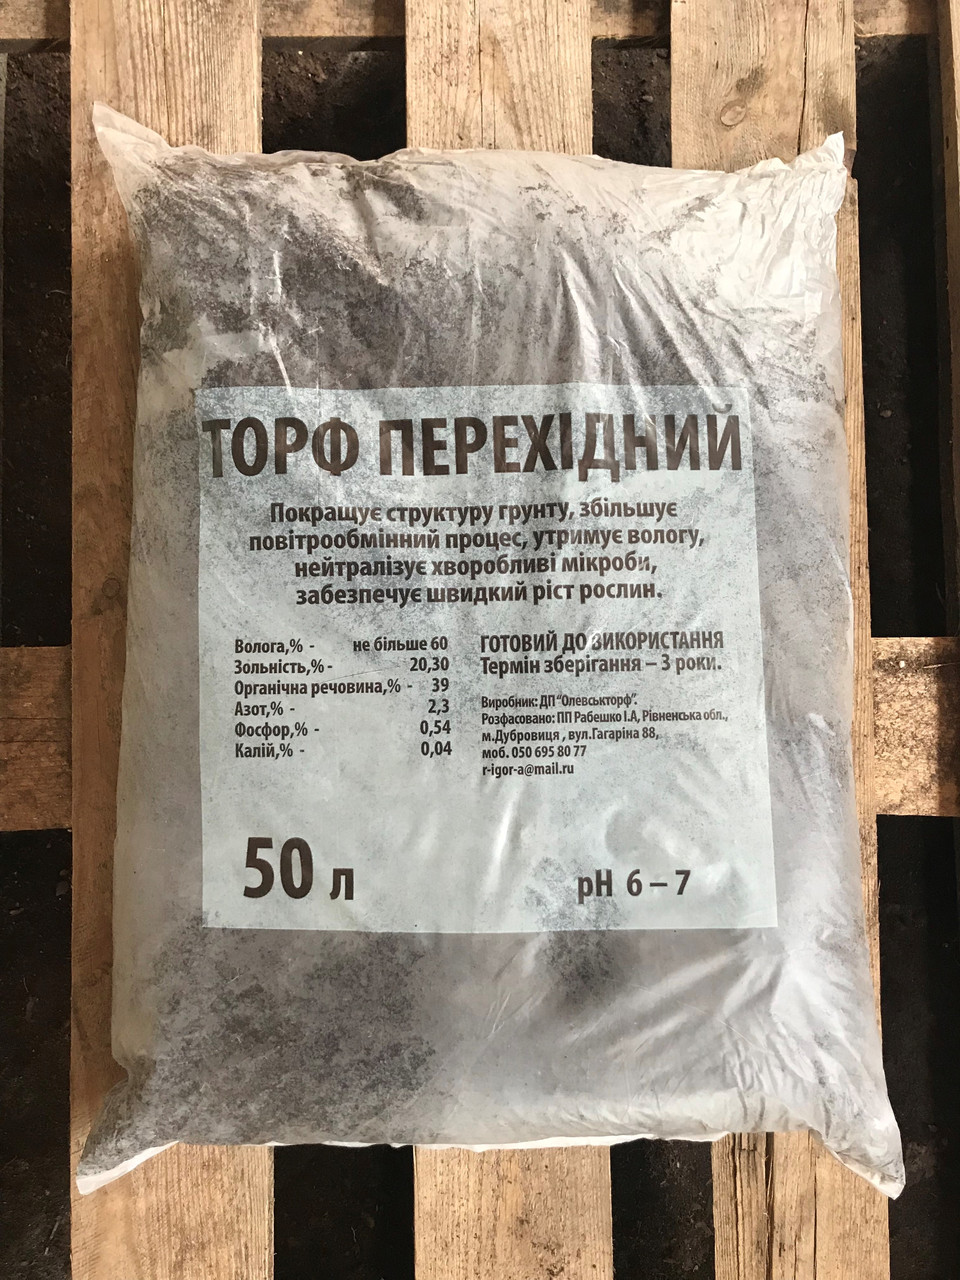 Торф перехідний pH 5.5-6.5 50 л Україна